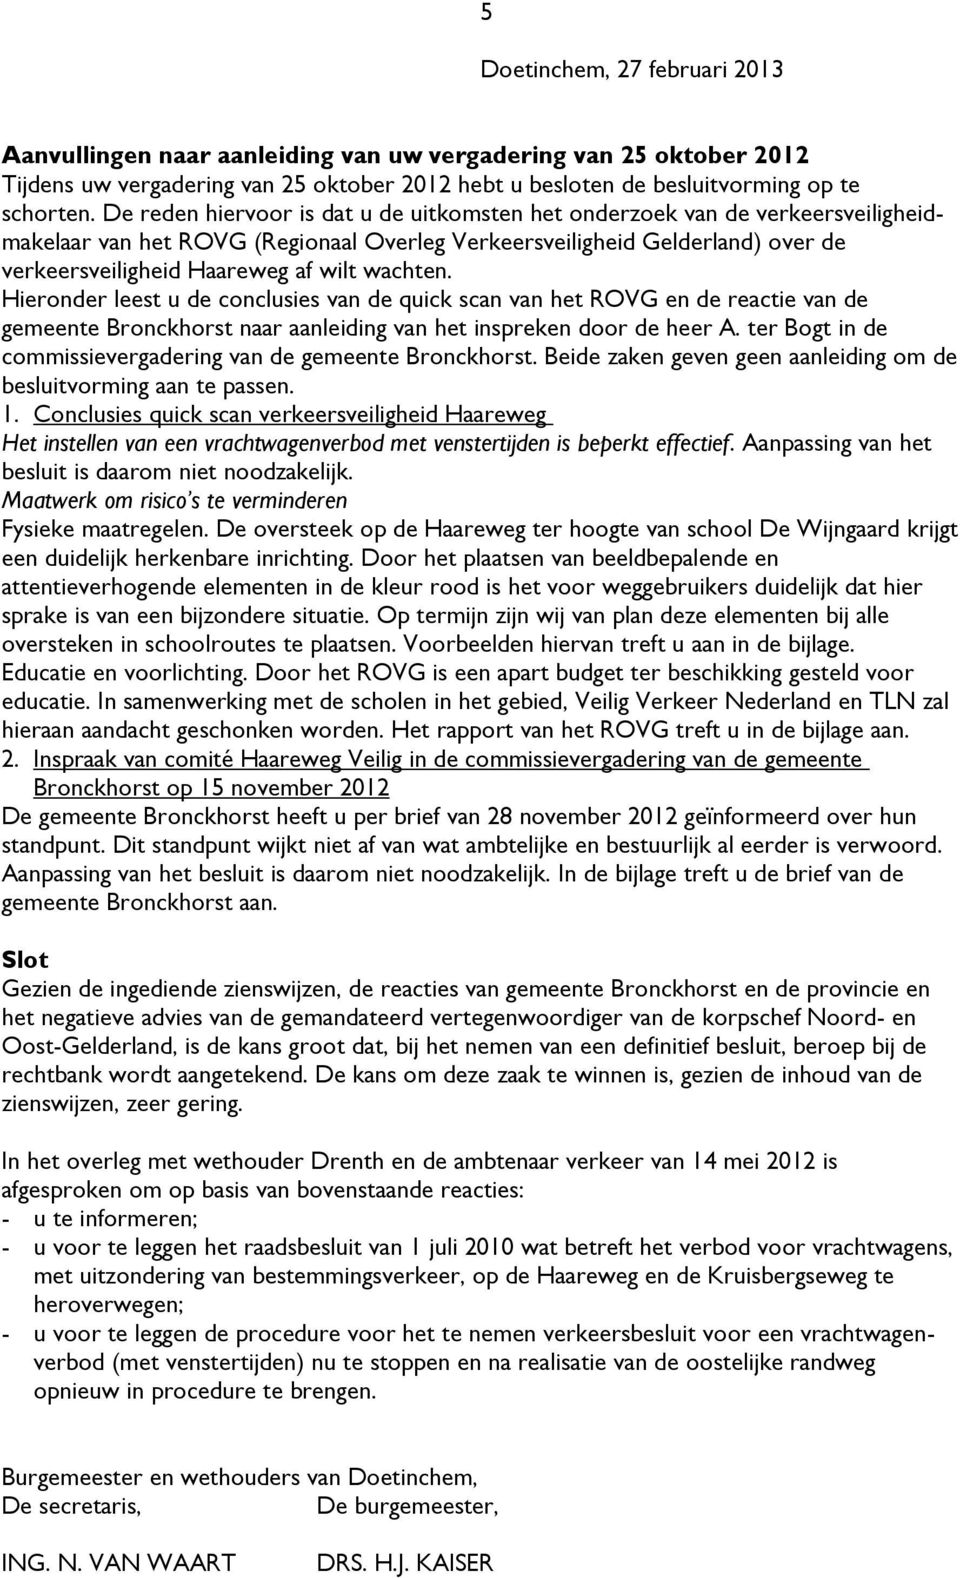 wachten. Hieronder leest u de conclusies van de quick scan van het ROVG en de reactie van de gemeente Bronckhorst naar aanleiding van het inspreken door de heer A.